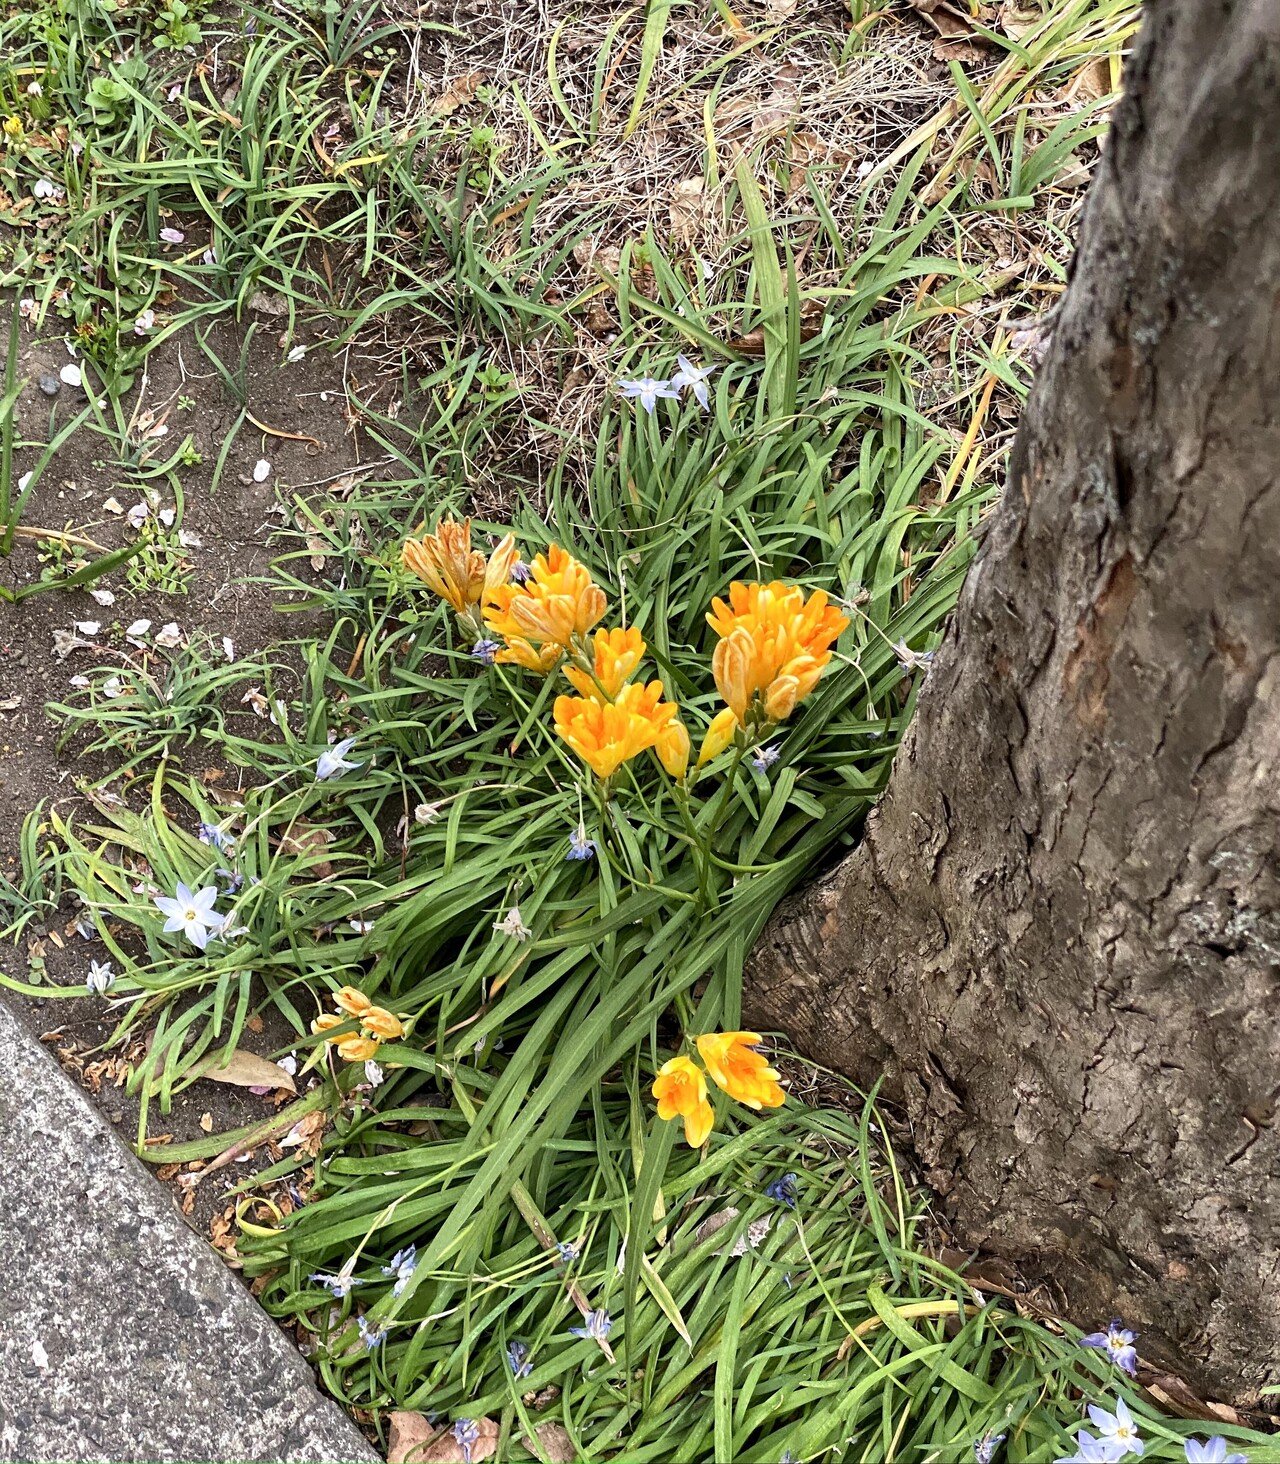 近所の花壇 元々は雑草しか生えてなかった道脇の場所に 近所の人がお花を植えてくれるようになって感謝です 春になるといろんな花が咲いて癒されます 花 の名前に詳しくなく 写真をとって調べたら フリージア Healthy Smiling Note